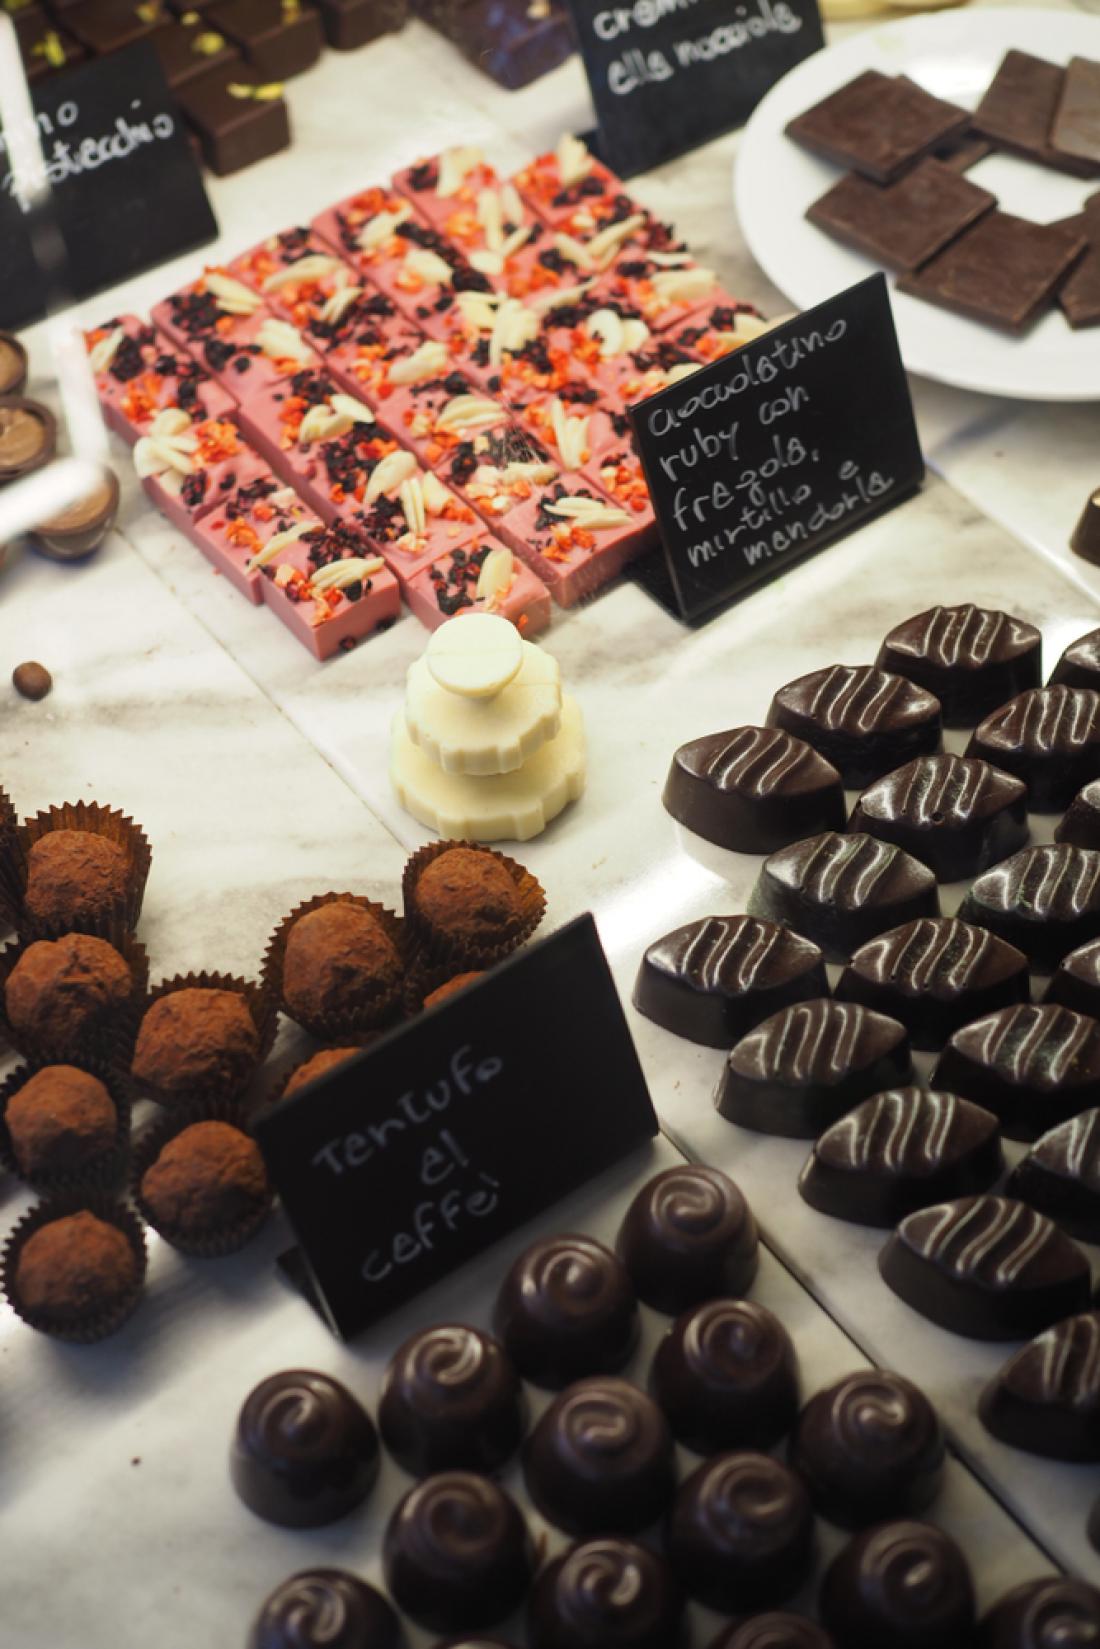 Oktobra je v Perugii eden največjih evropskih festivalov čokolade. Foto: Olga Merolla/Shutterstock